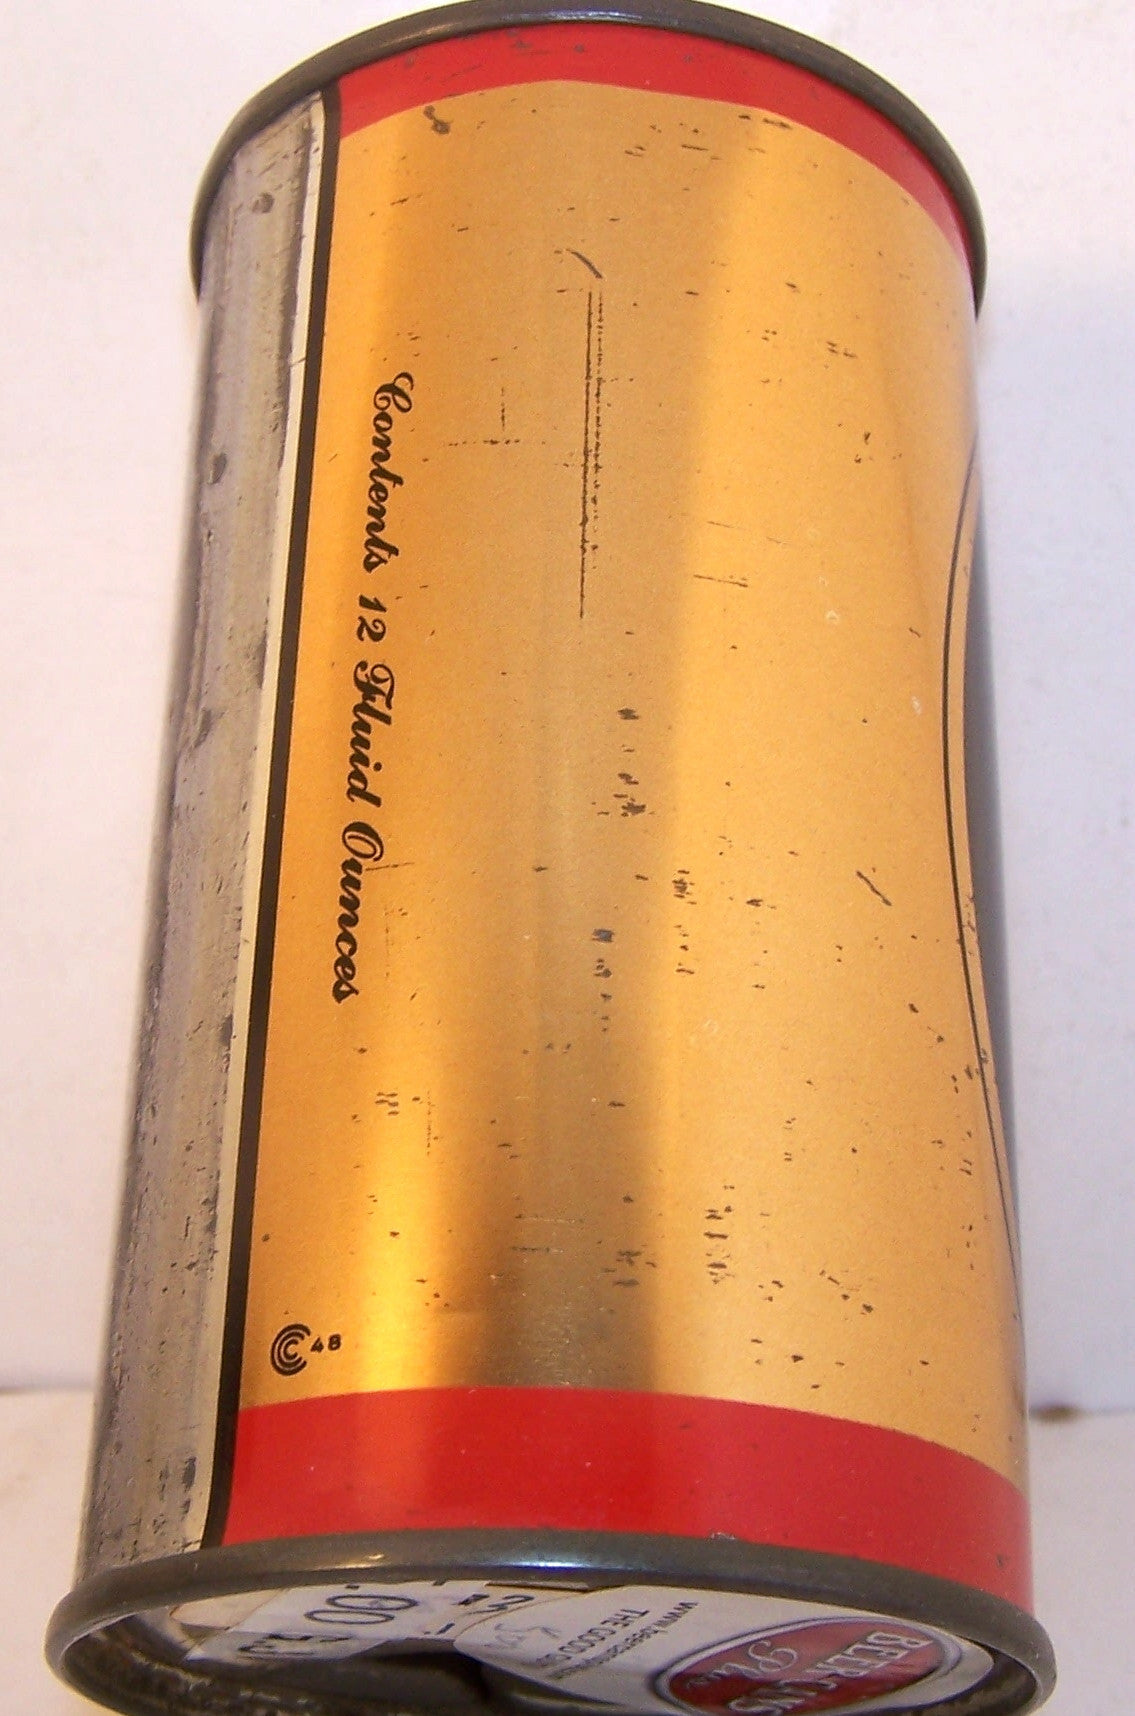 Bock Brand Beer, USBC 40-4, Grade 1 Sold 1/17/15